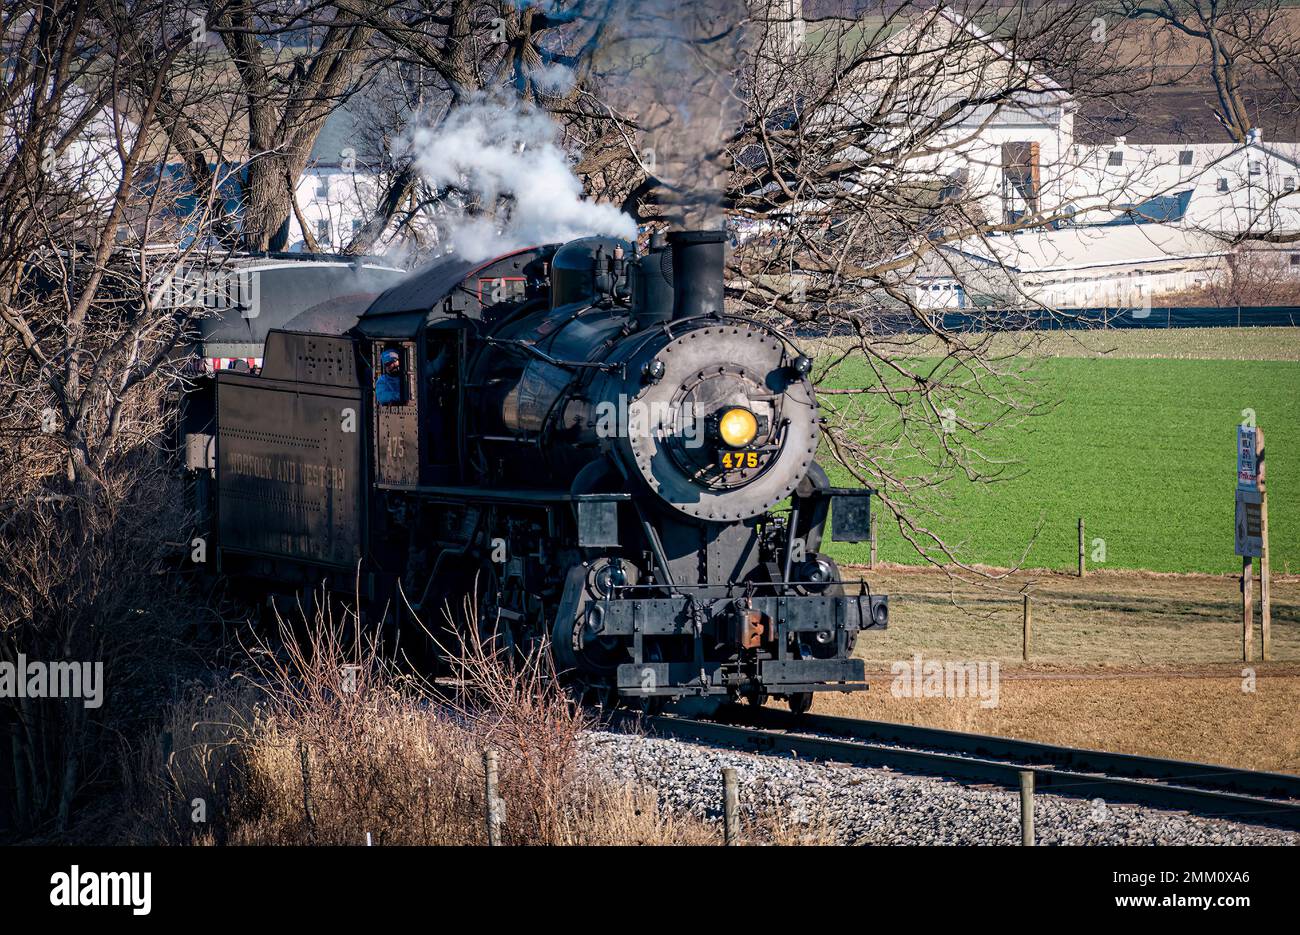 Ronks, Pennsylvanie, 30 décembre 2022 - Vue sur un train de passagers à vapeur classique qui s'approche, se déplace à travers la campagne, souffle de fumée et de vapeur lors d'une journée d'hiver Banque D'Images